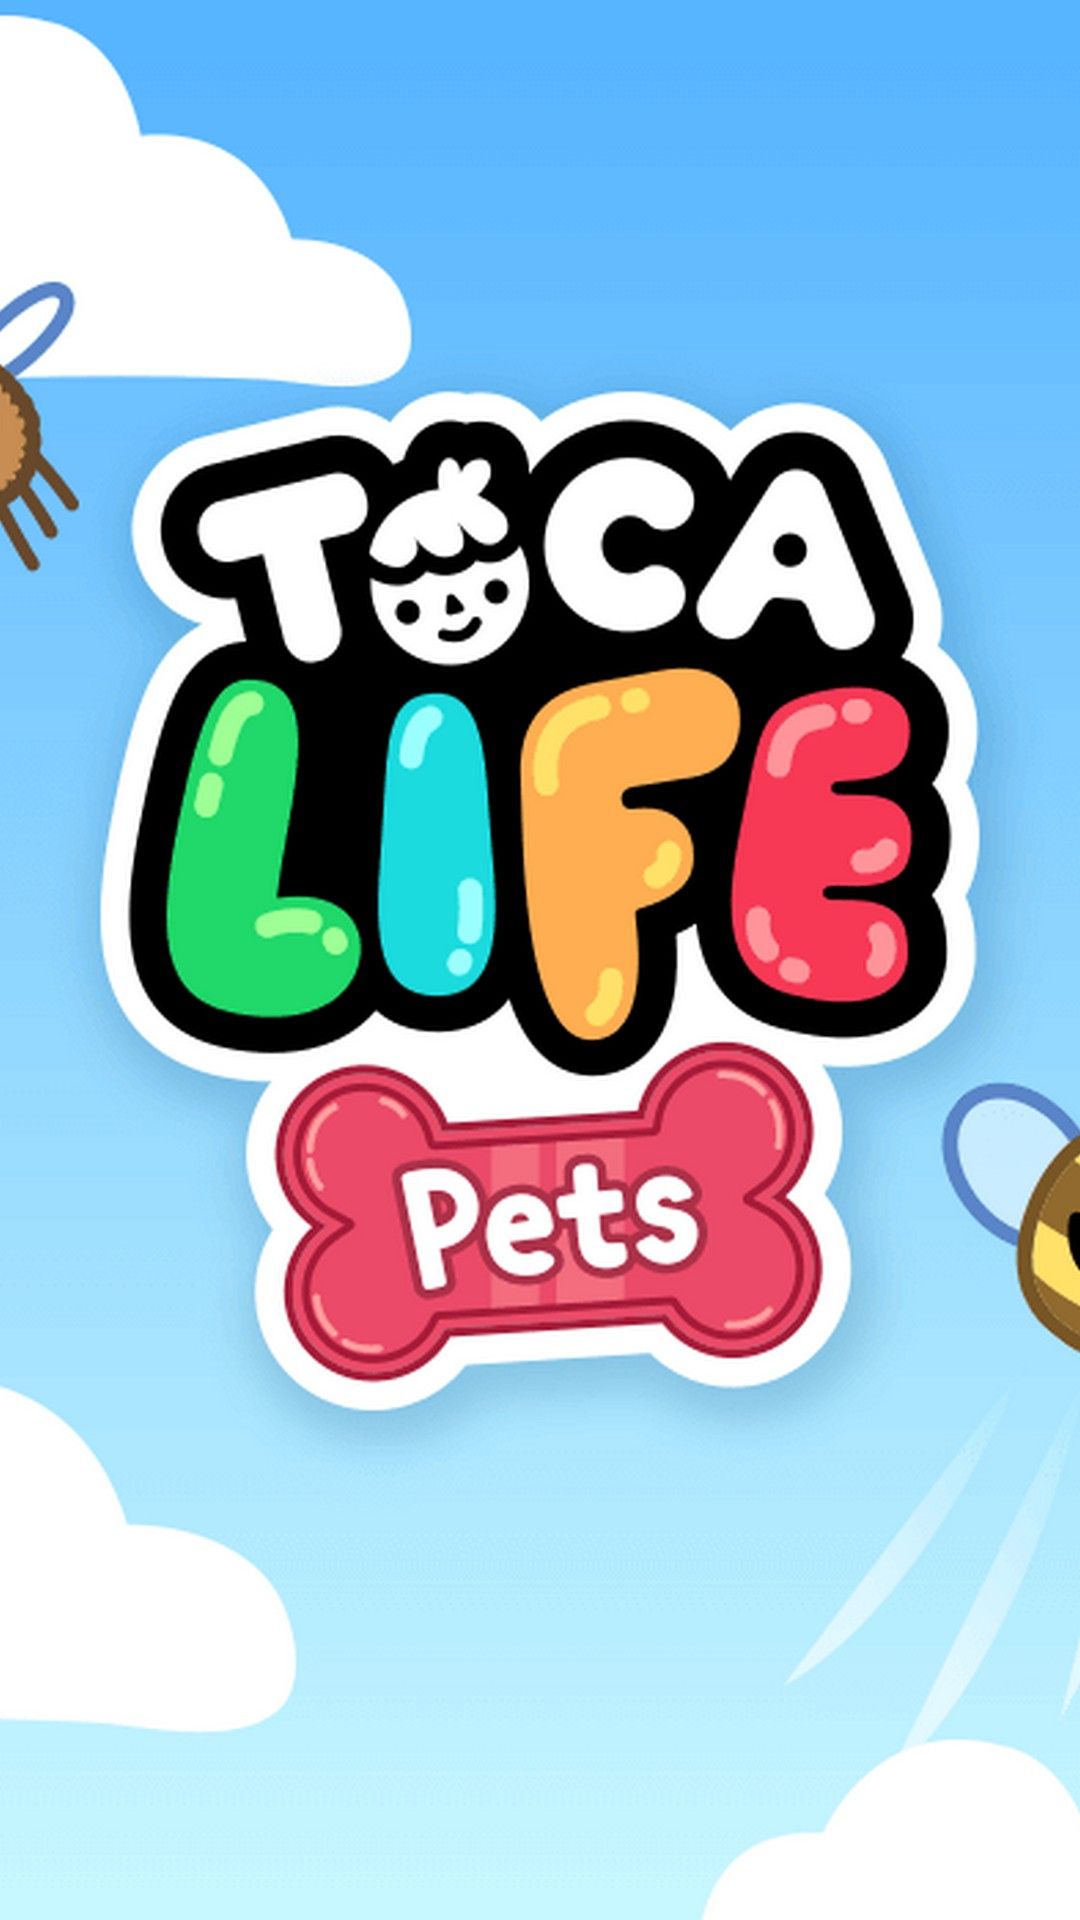 Toca life pets screenshot - Toca Boca